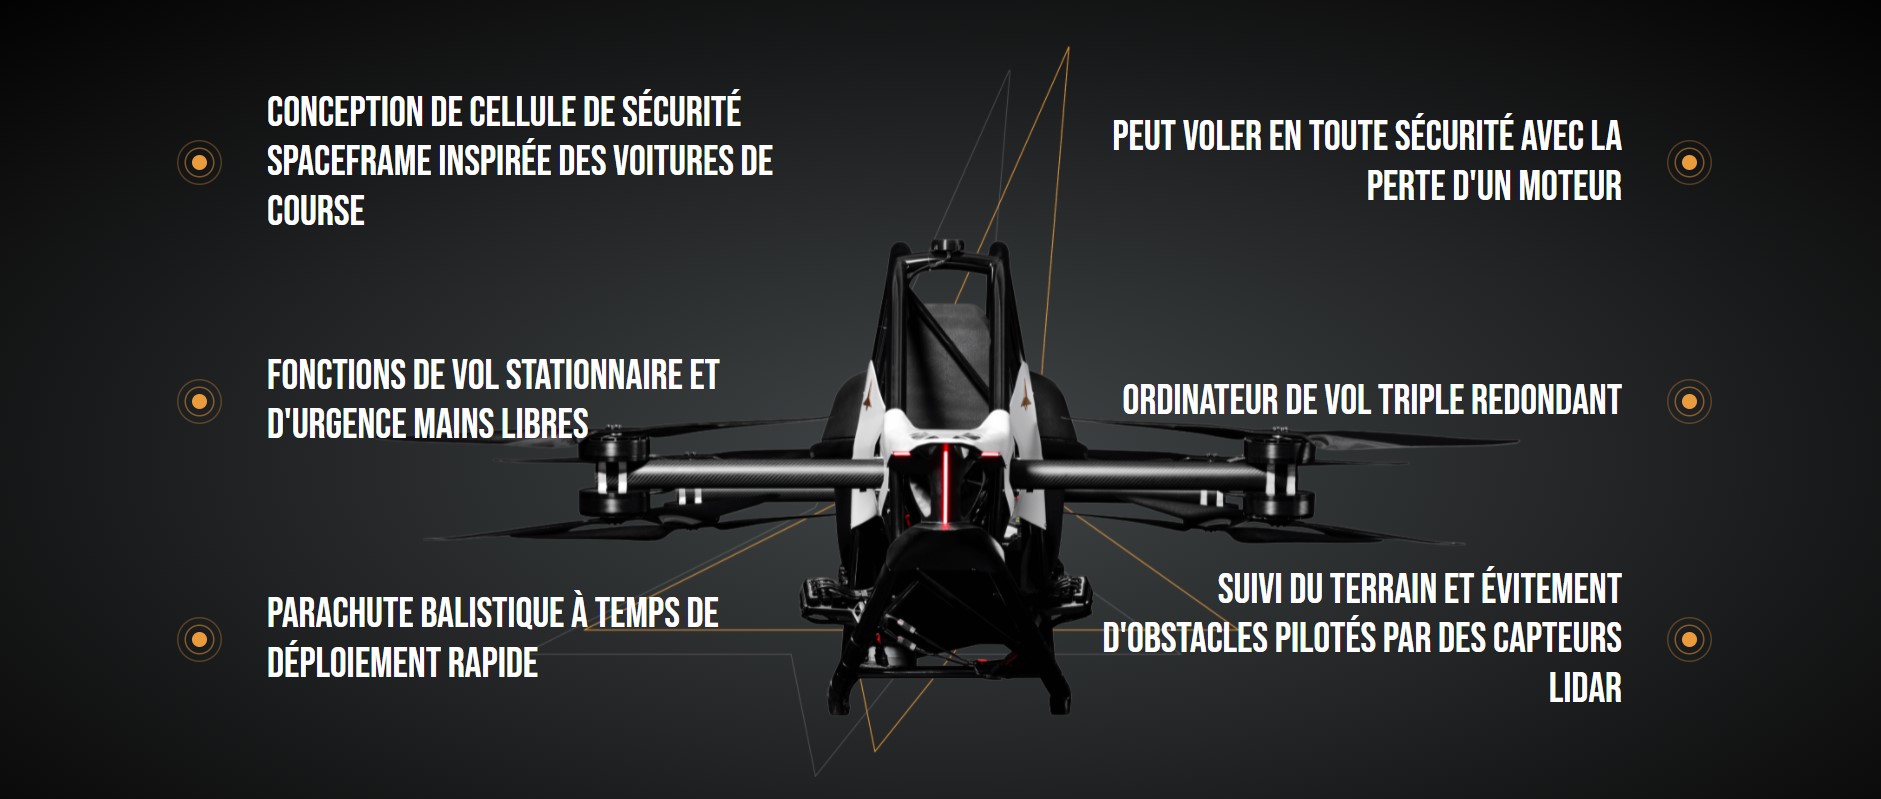 Jetson One drone volant avec pilote embarqué de Jetson Aero. – Site  identitaire pour les beautés noires, femmes noires, et femmes métisses